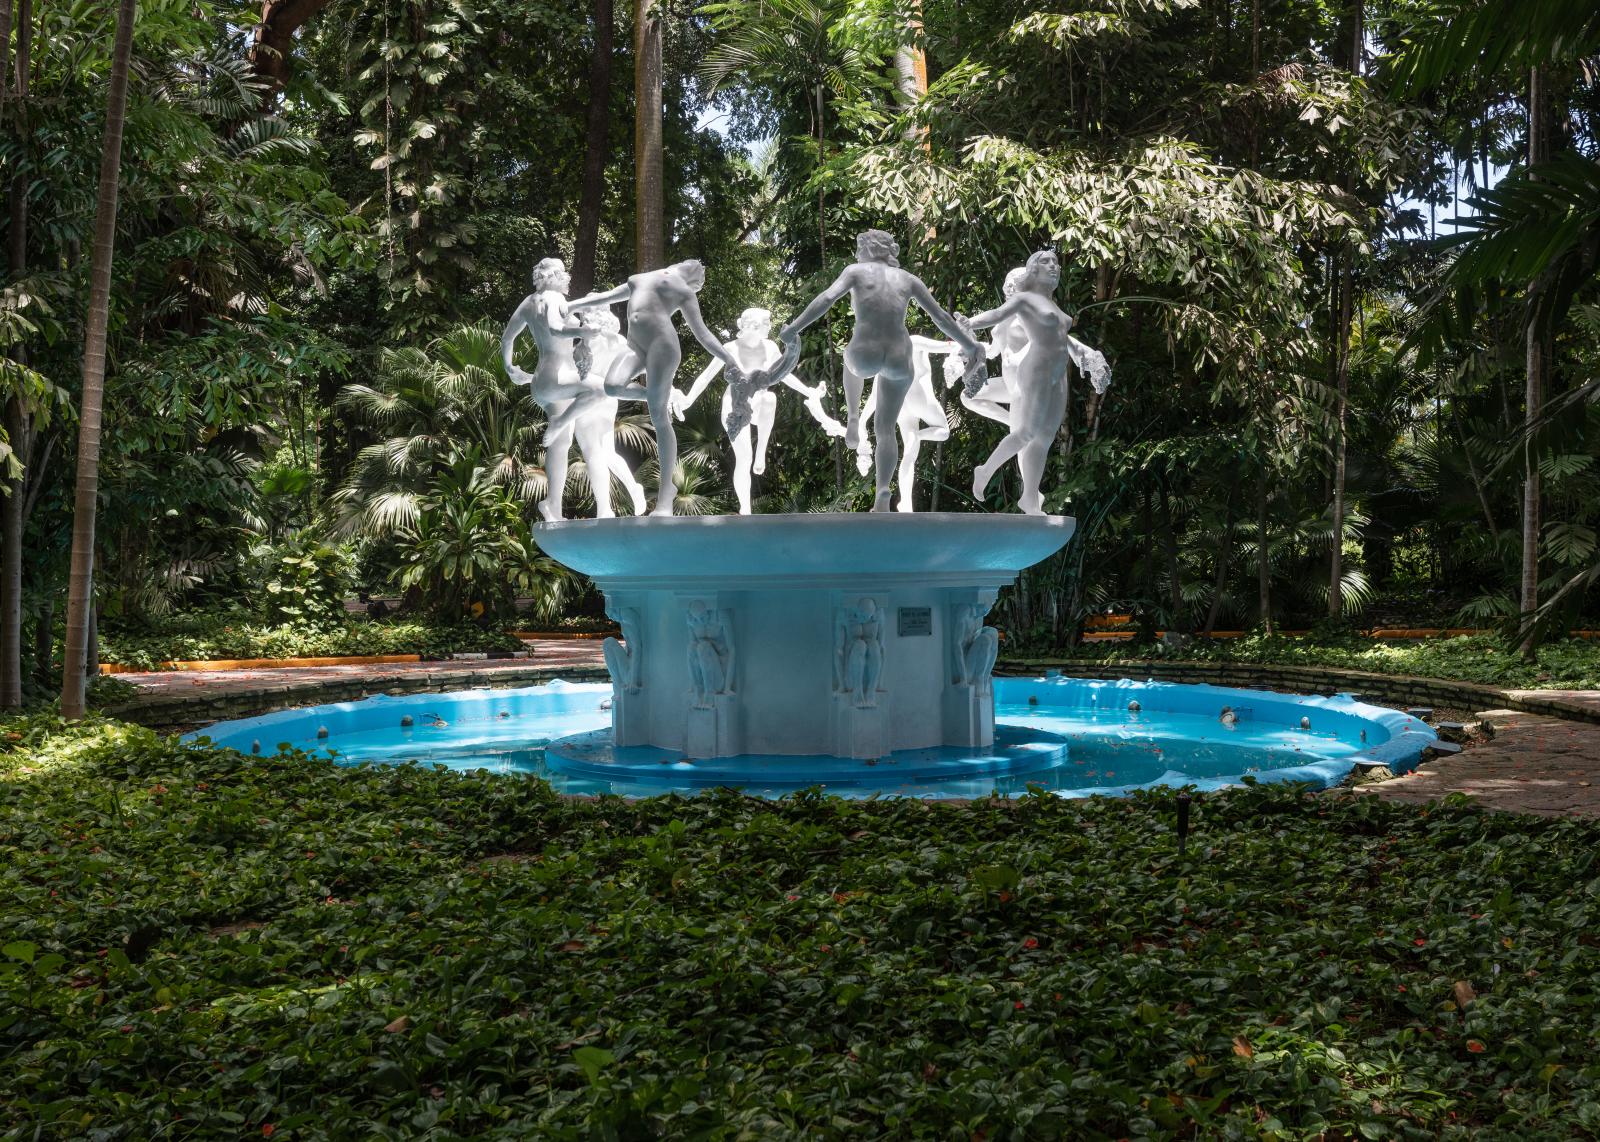 The Fountain of the Nymphs, Tropicana / La Fuente de las Ninfas, Tropicana